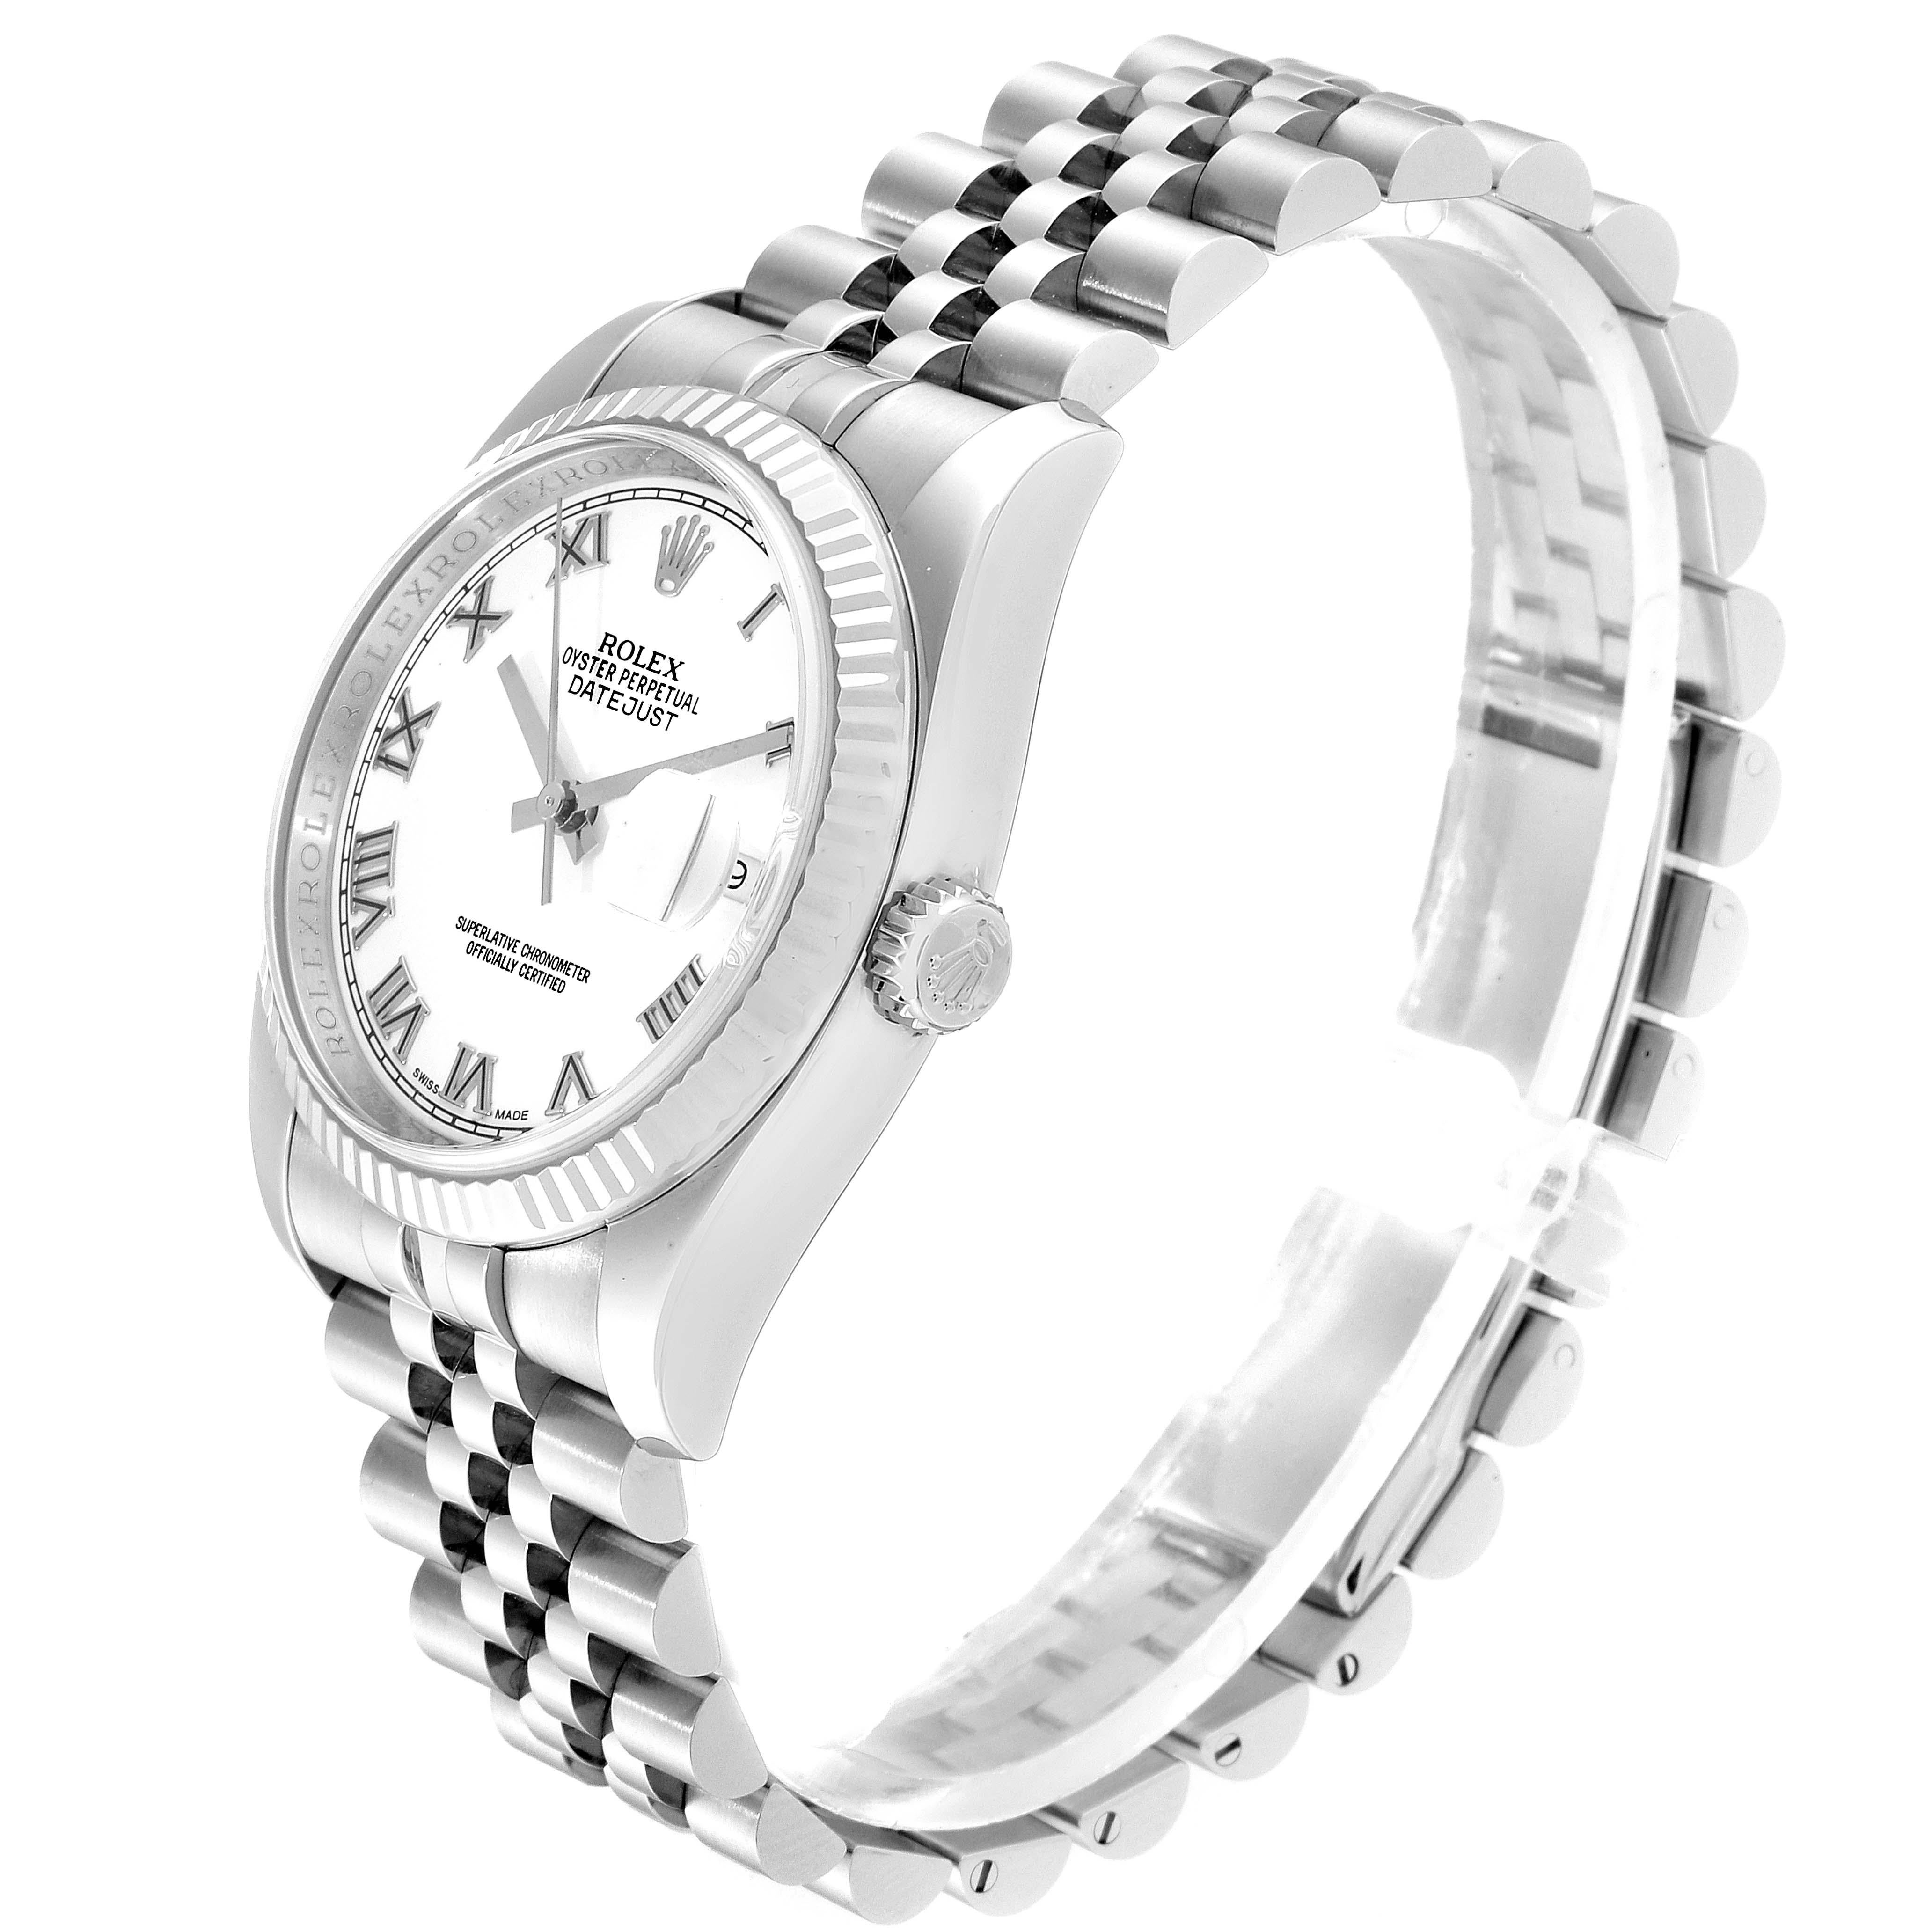 Rolex Datejust Steel White Gold Jubilee Bracelet Men's Watch 116234 For Sale 1